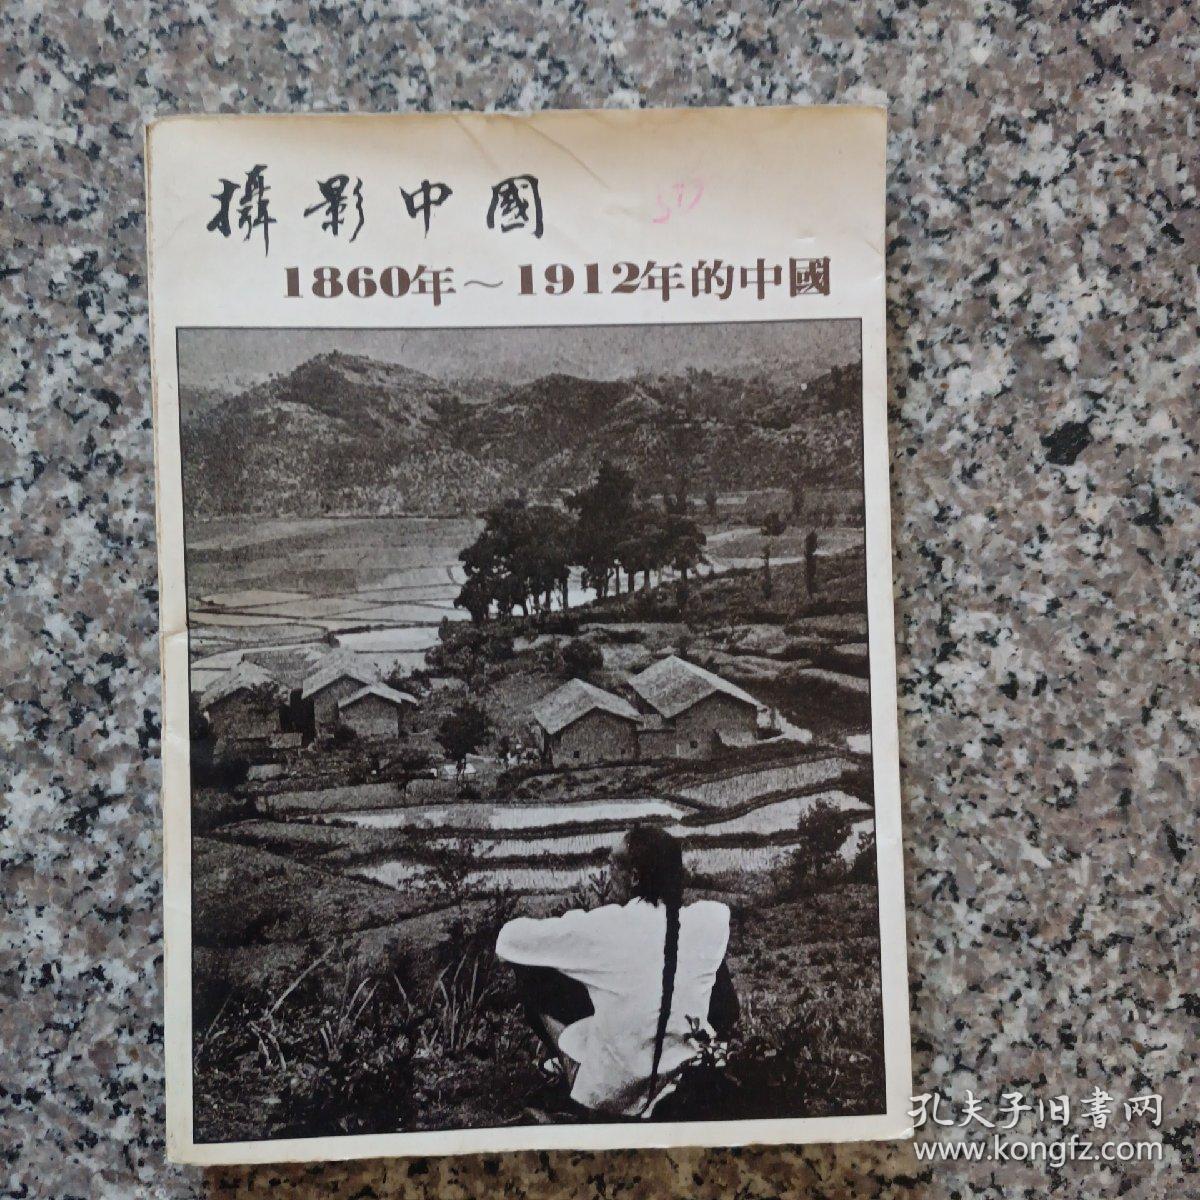 摄影中国1860—1922年的中国